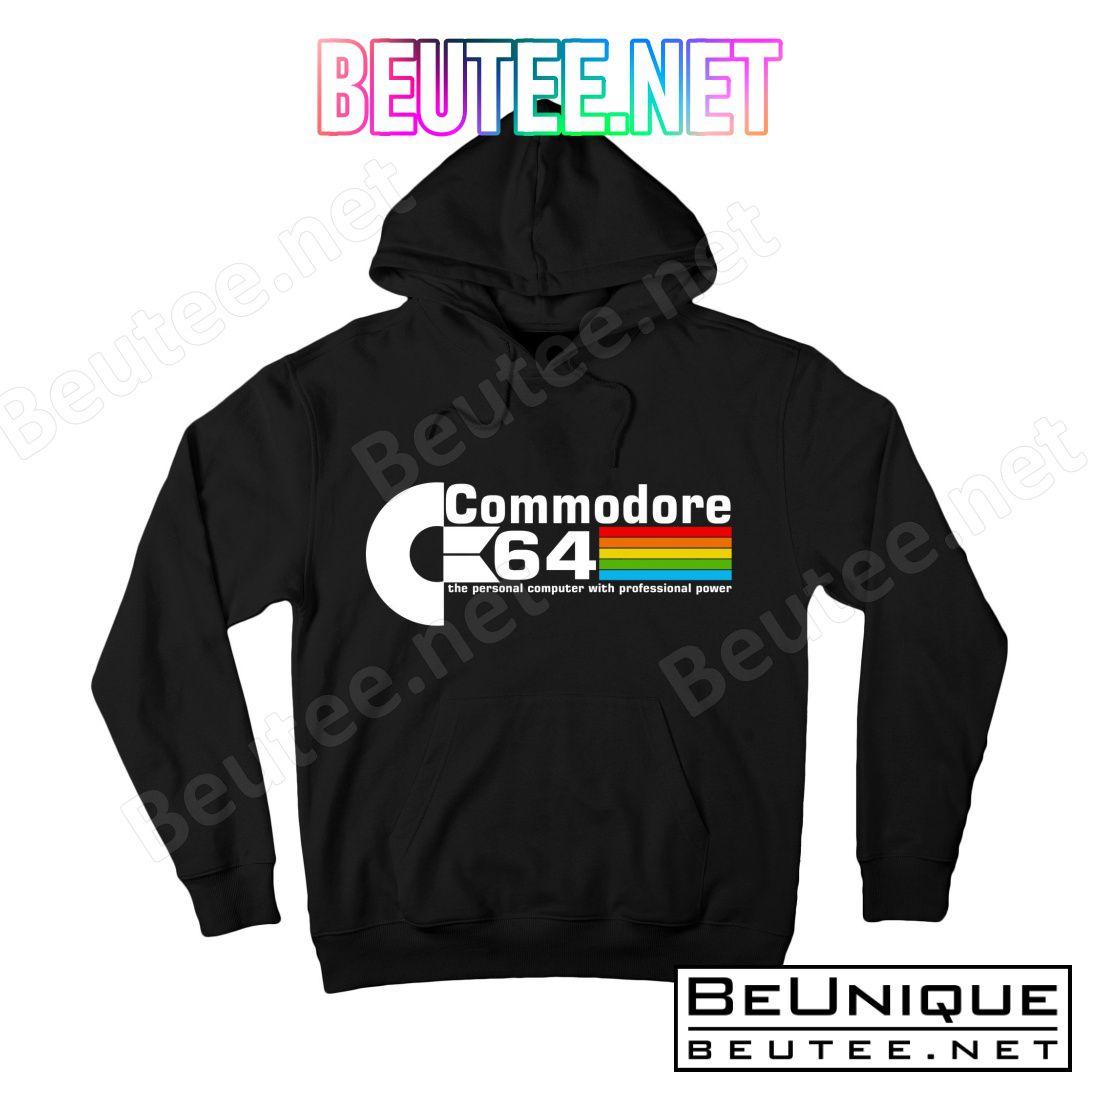 Commodore 64 Retro Computer T-Shirts